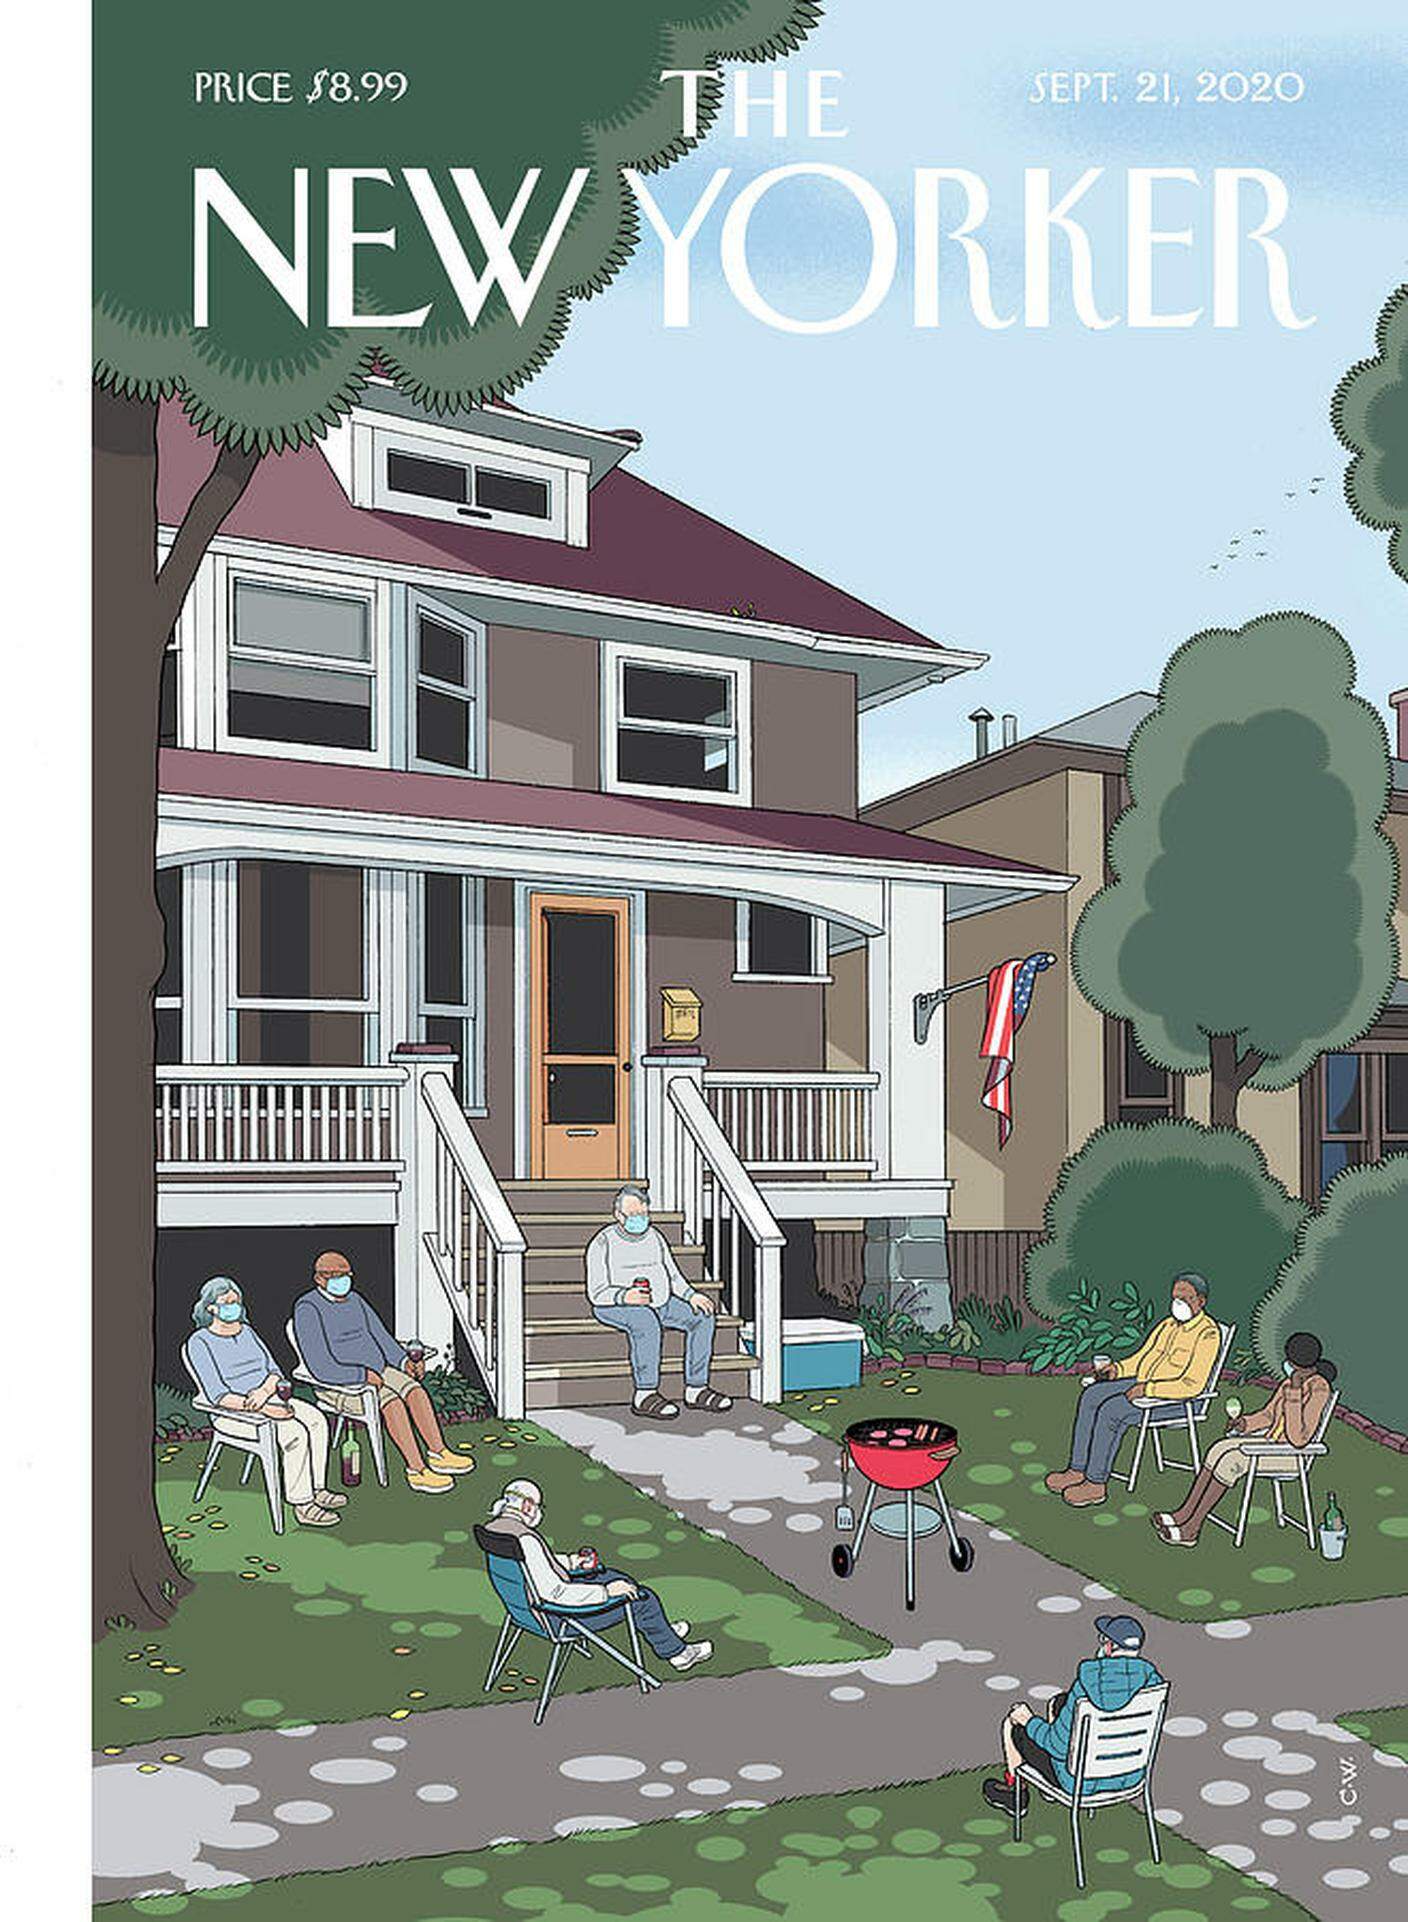 Copertina di Chris Ware per il New Yorker